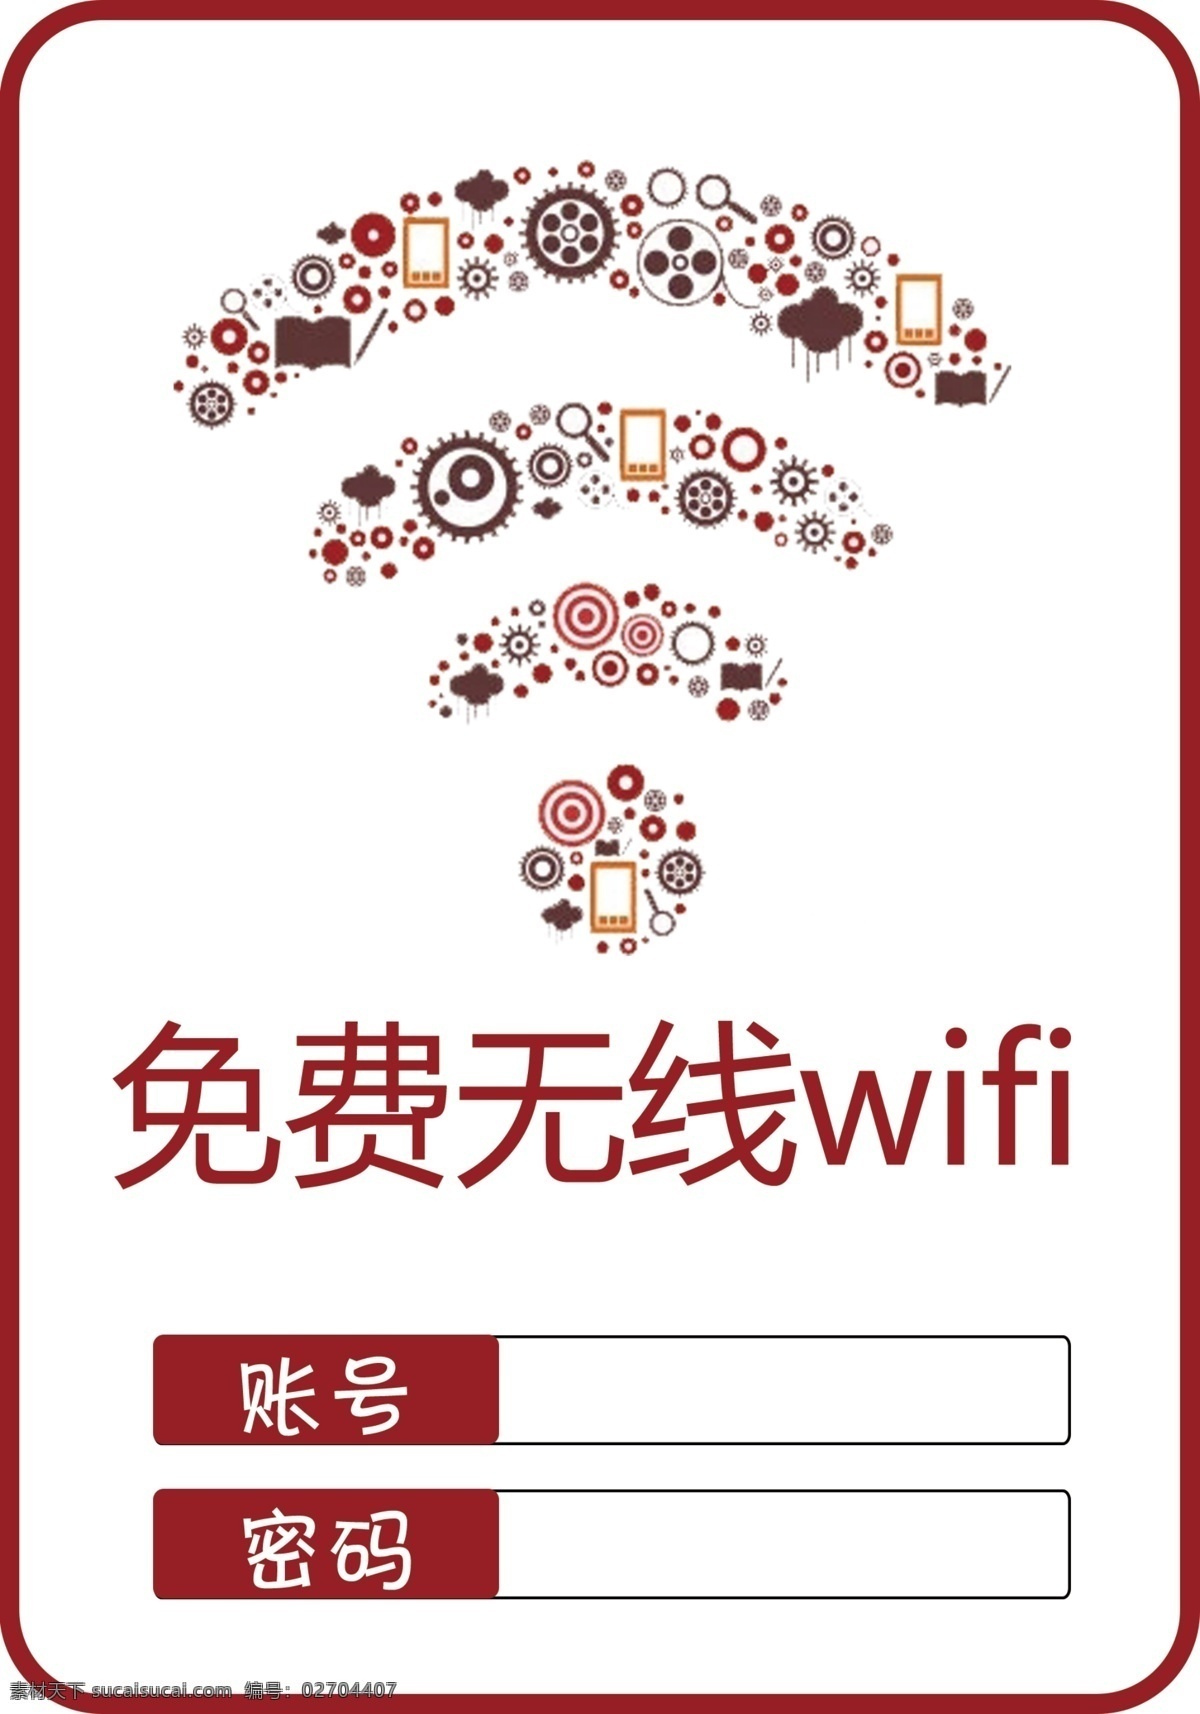 免费 无线 wifi wifi图标 免费wifi 无线wifi 标志图标 公共标识标志